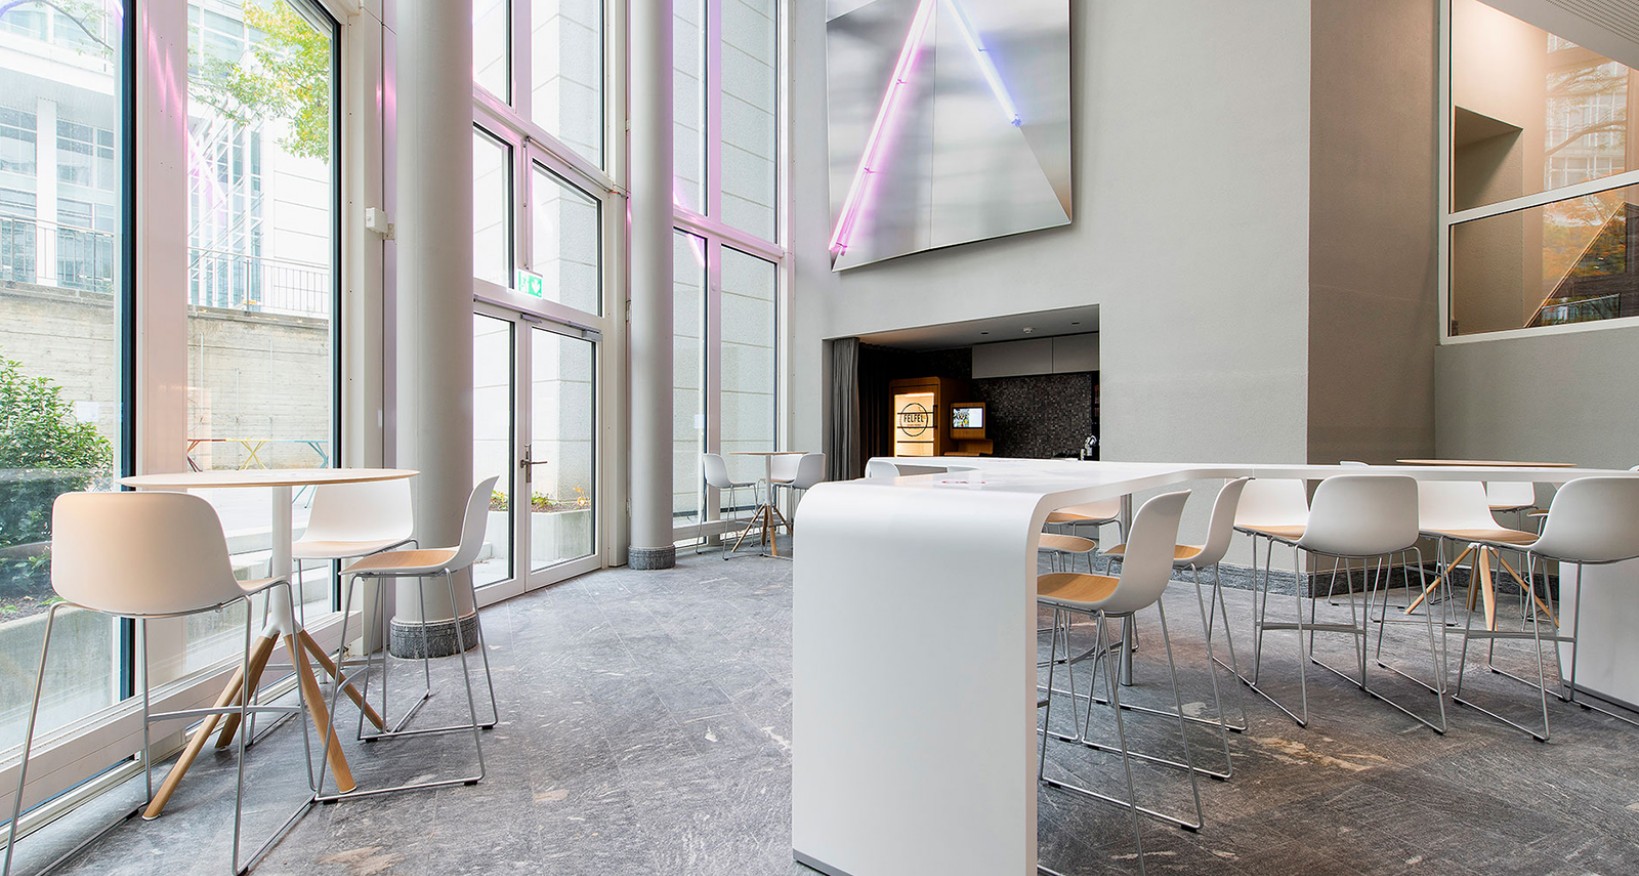 Zentral auf dem ABB-Areal gelegen, bietet das Objekt DUPLEX 110 m² bis  1‘965 m² flexibel nutzbare Büroflächen mit Aussenparkplätzen